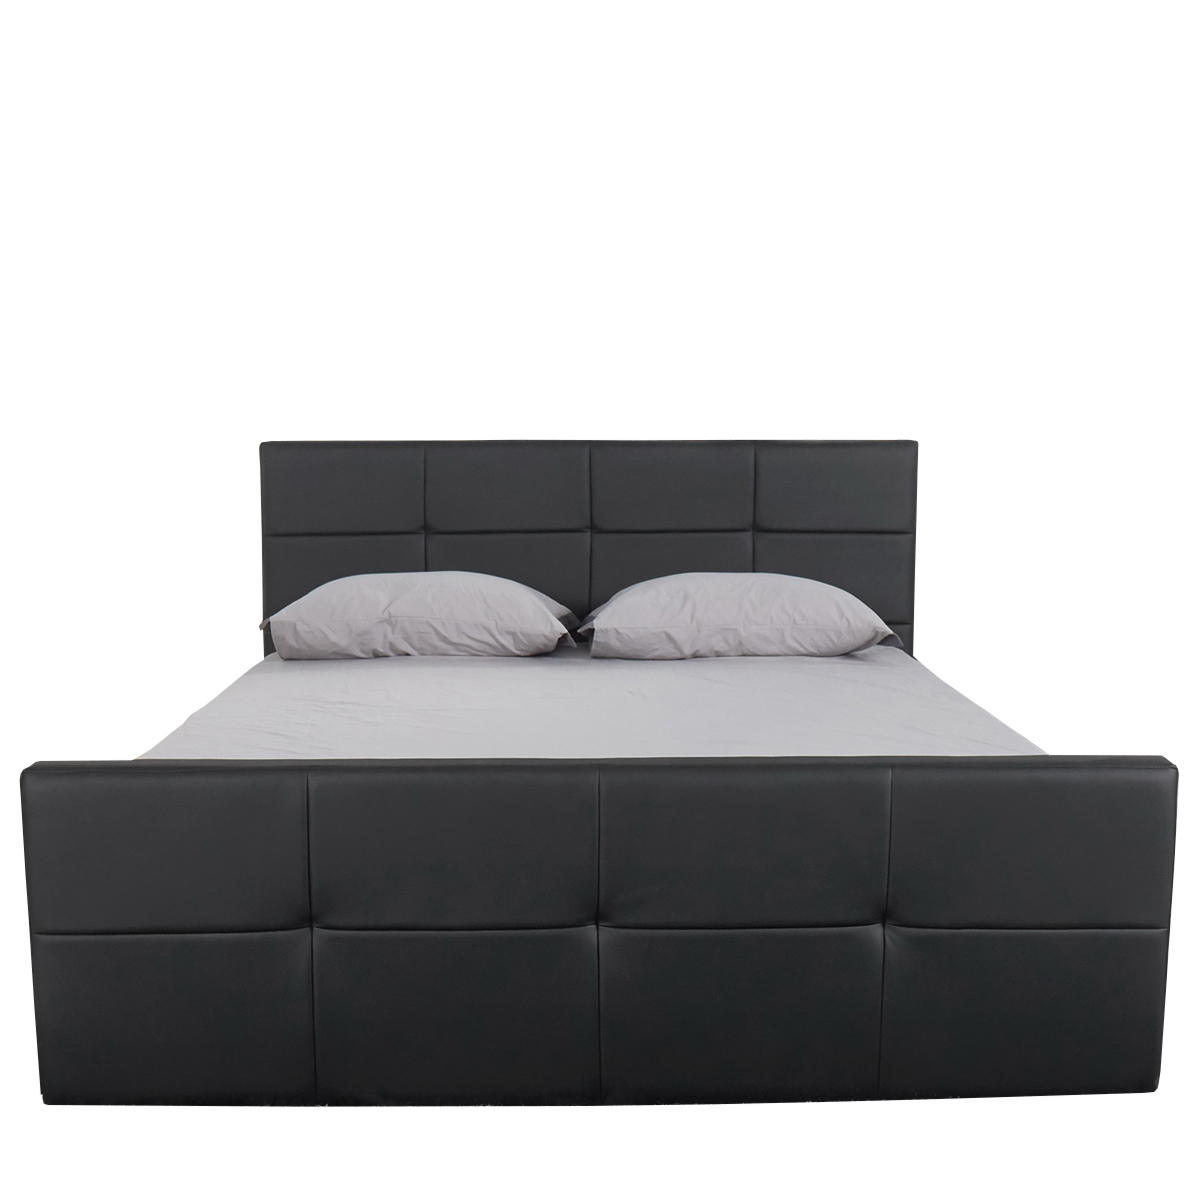 Κρεβάτι ANEMONE Μαύρο PU Με Αποθηκευτικό Χώρο 217x170x100cm